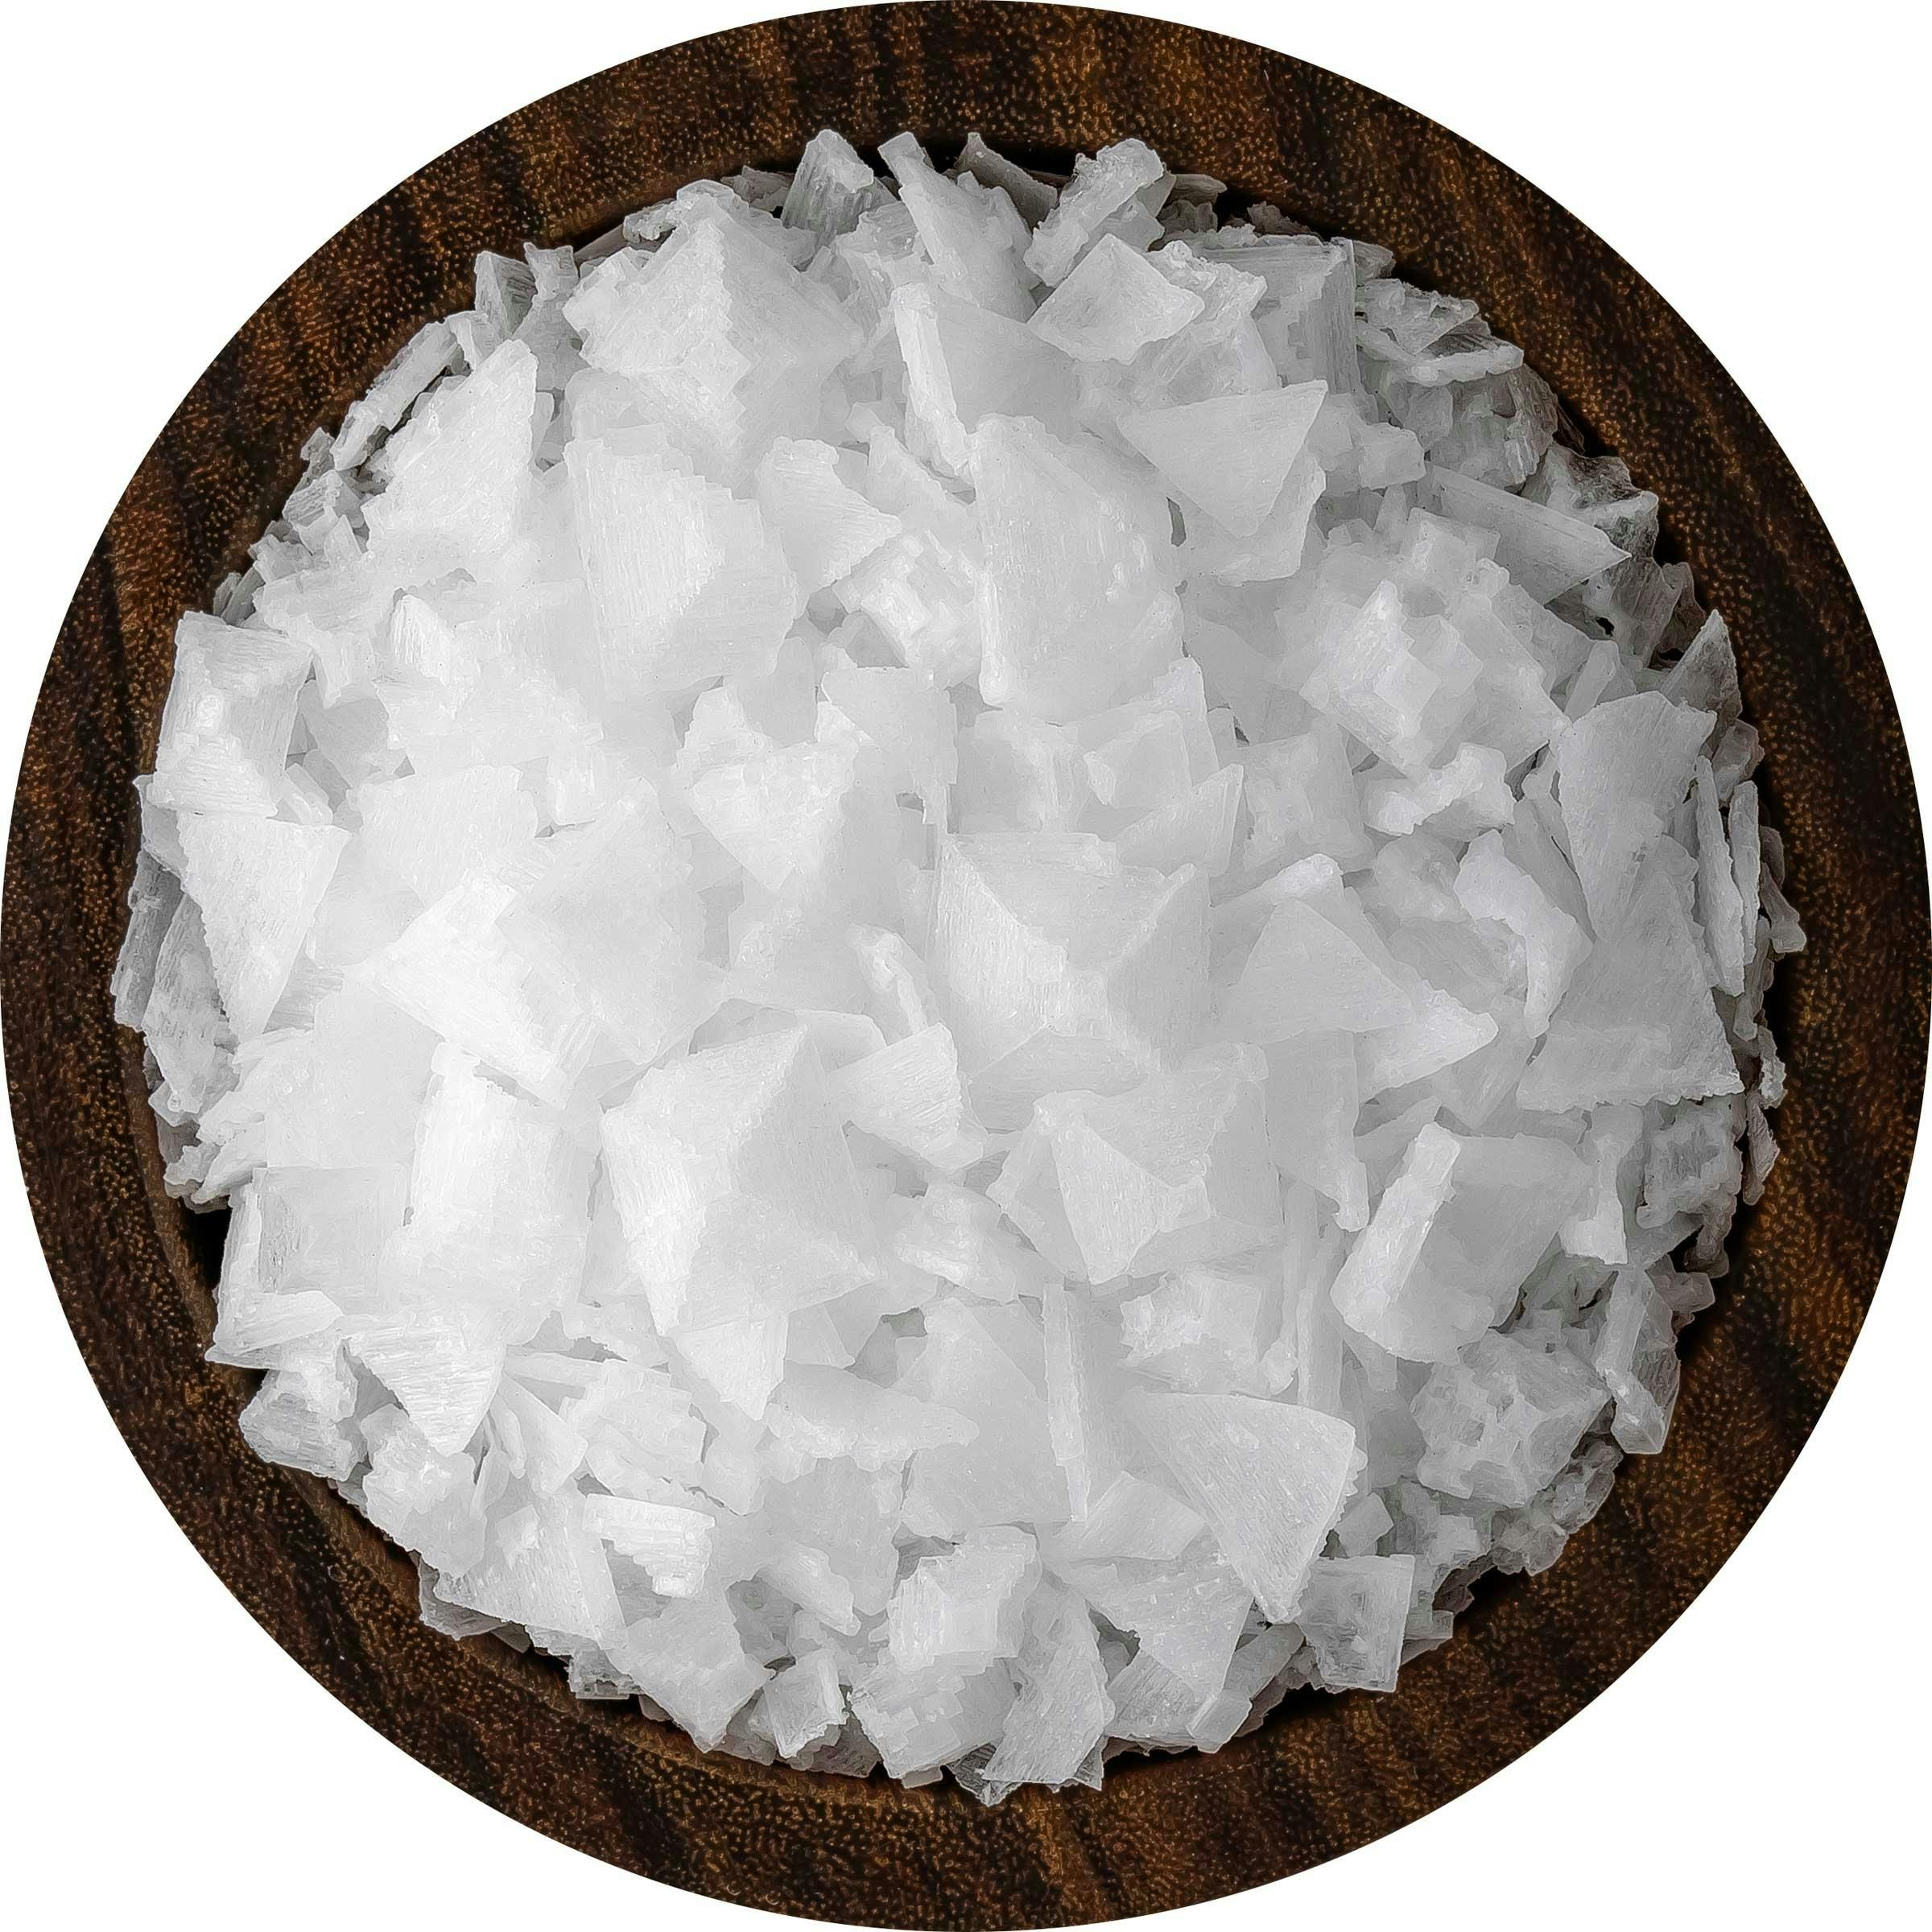 flakey salt